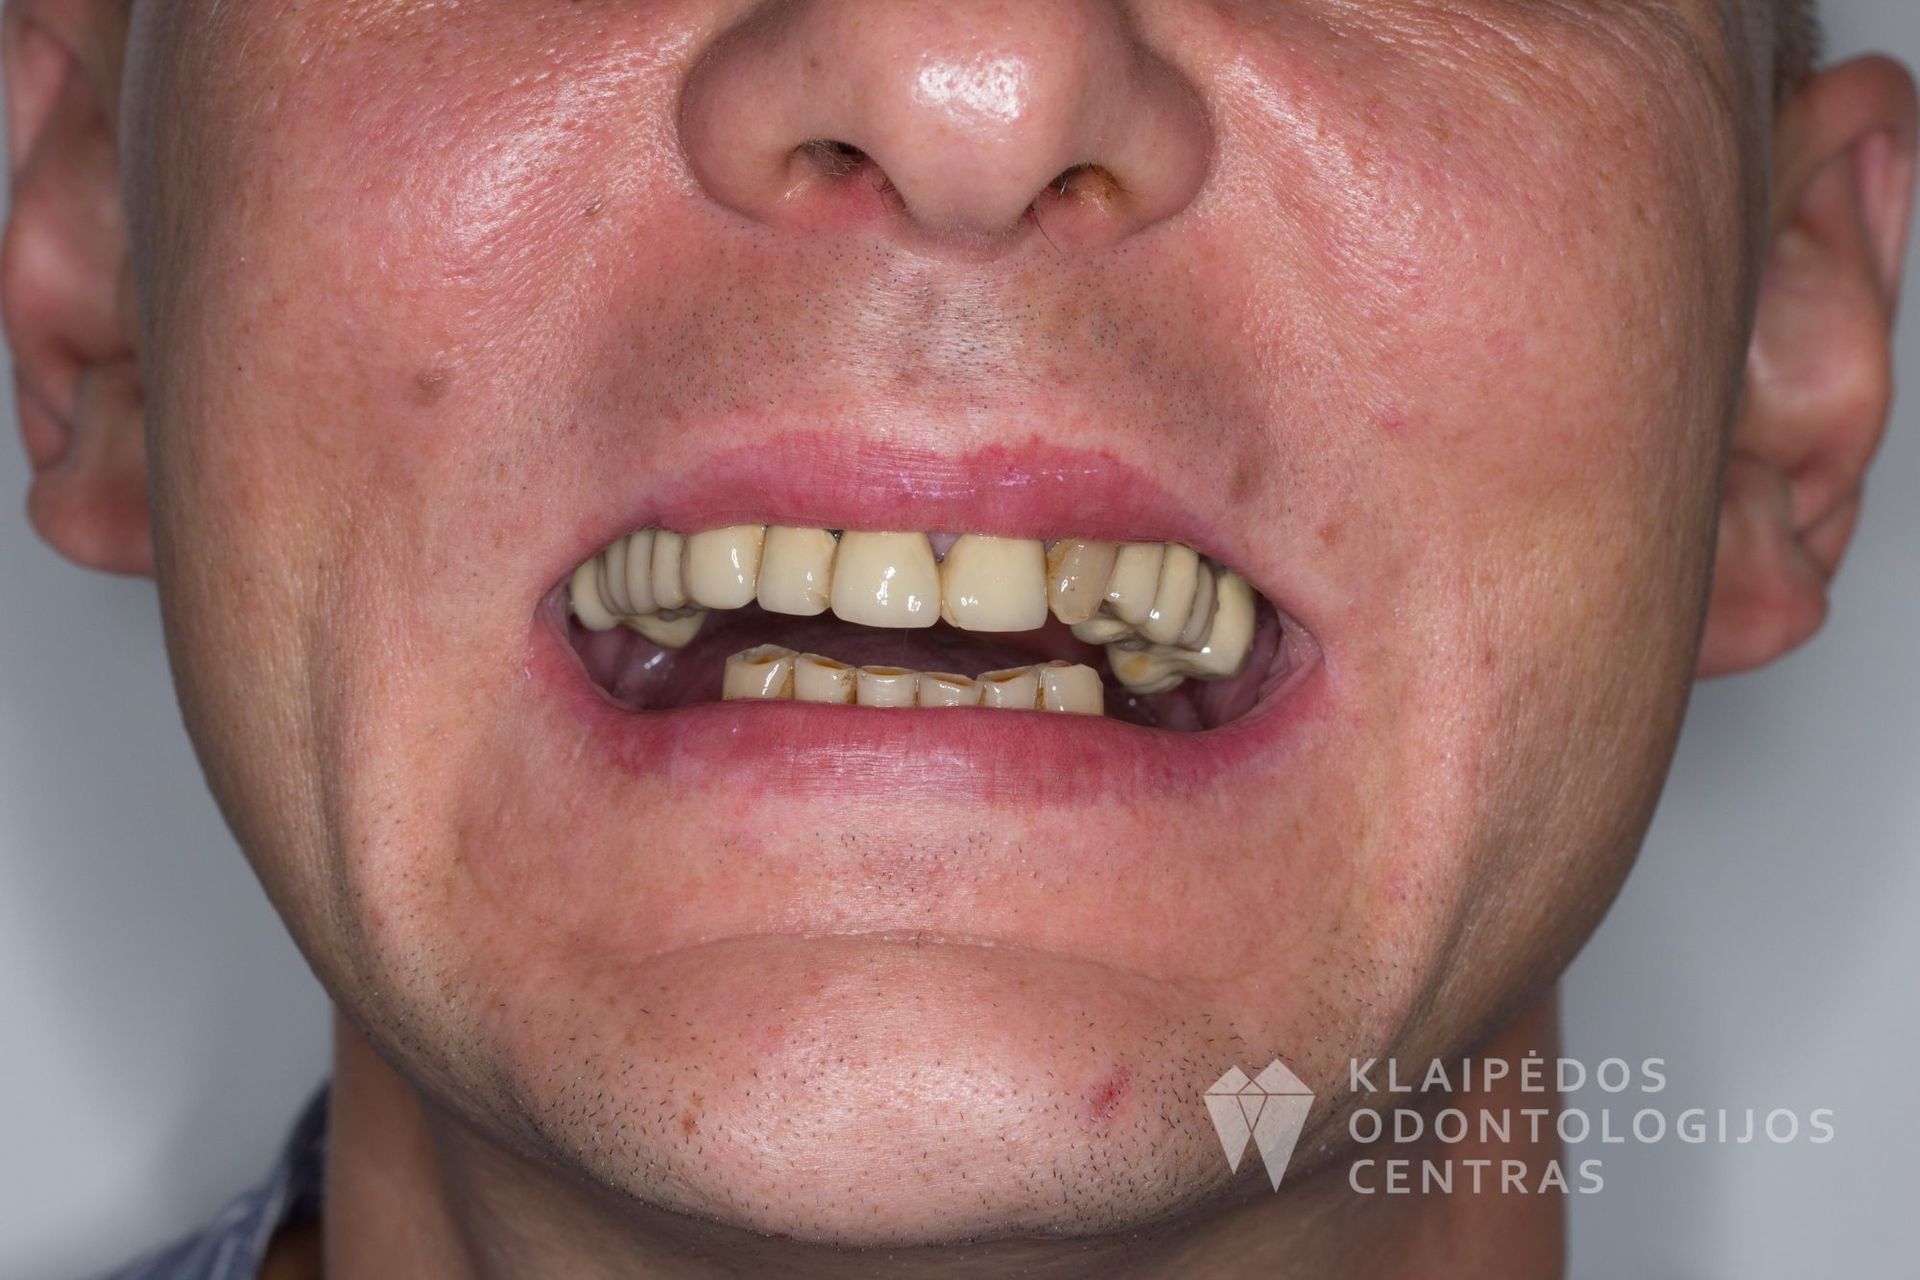 Visų dantų protezavimas cirkonio keramikos vainikėliais ant dantų ir implantų - prieš